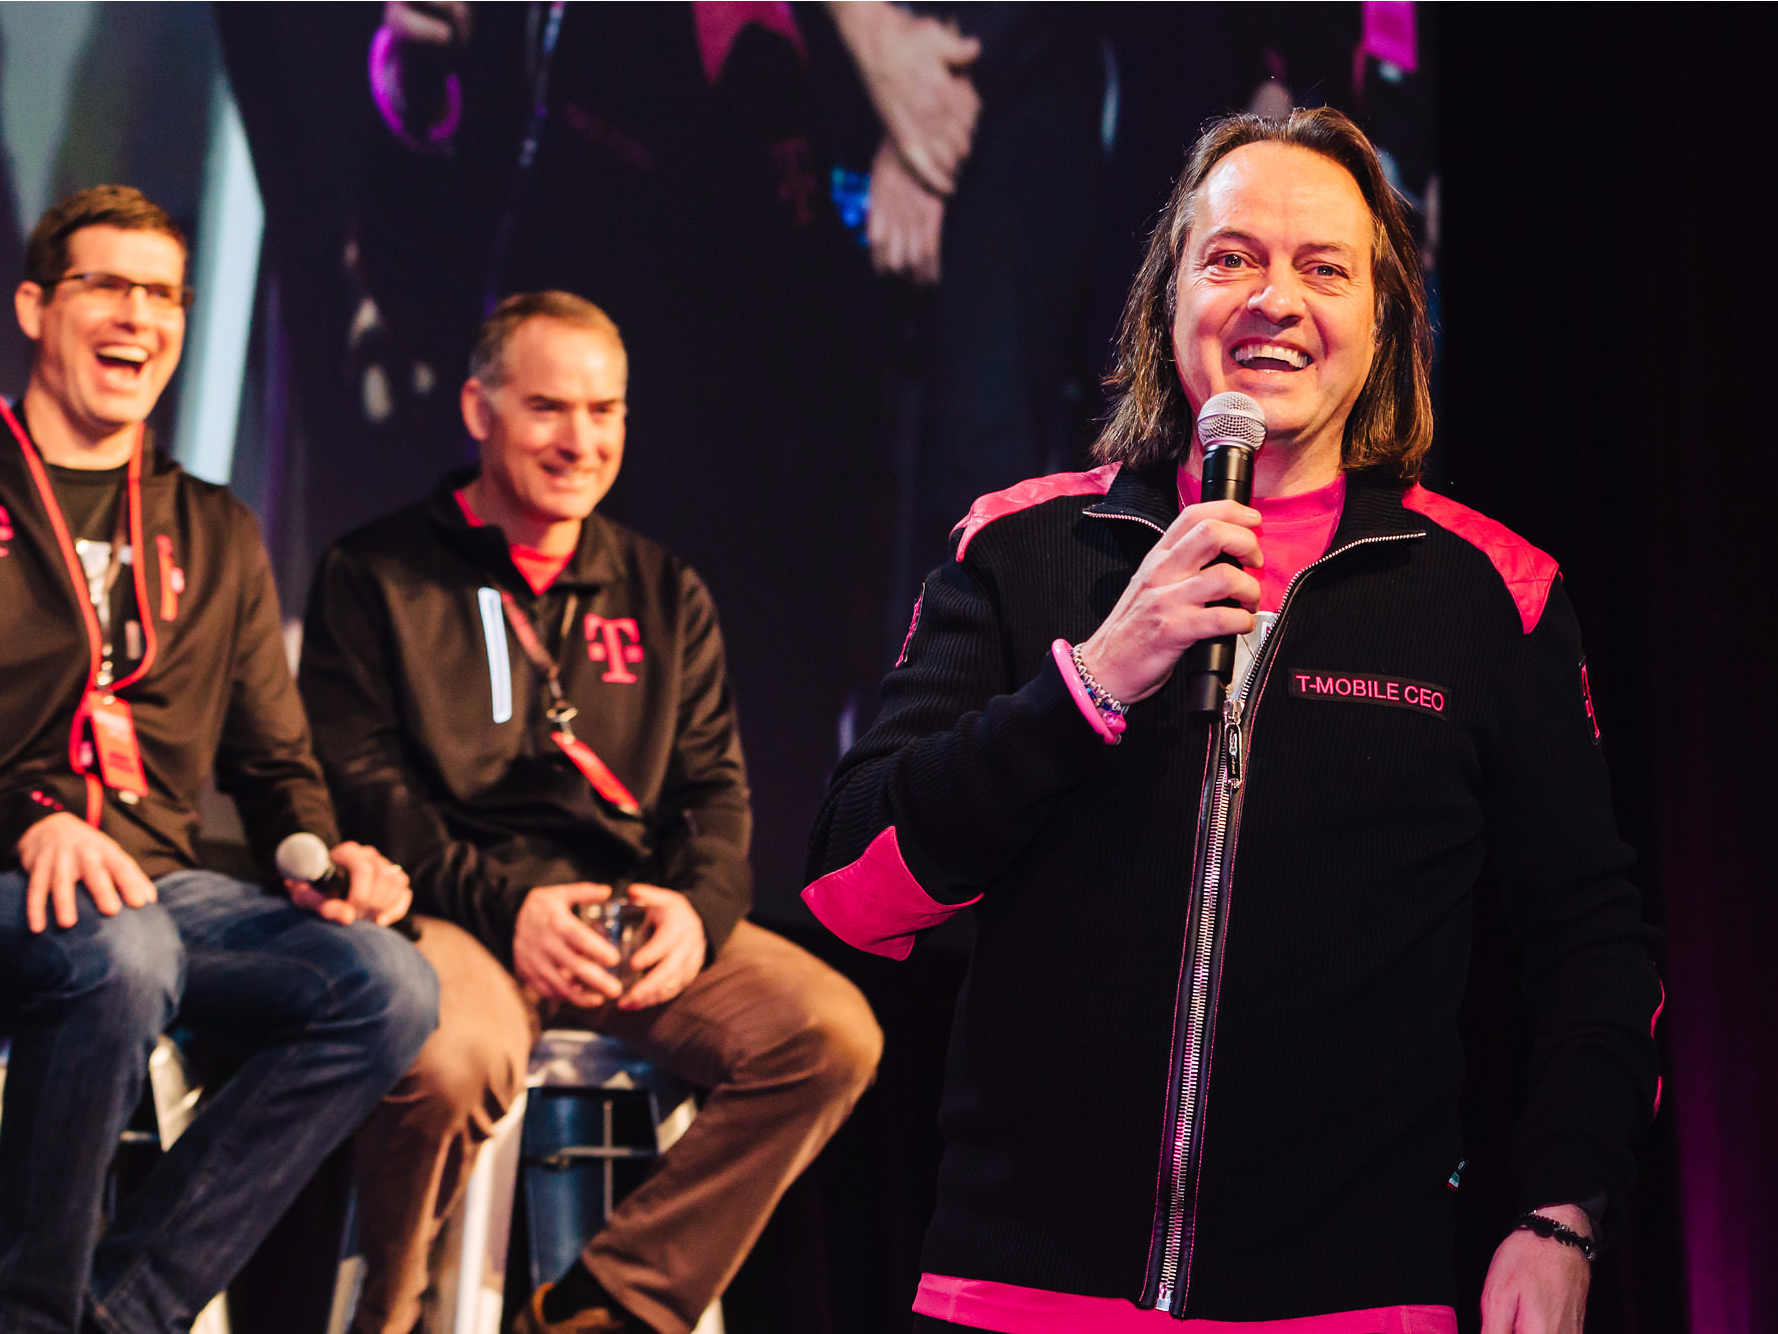 T-Mobile US CEO John Legere tijdens een evenement.